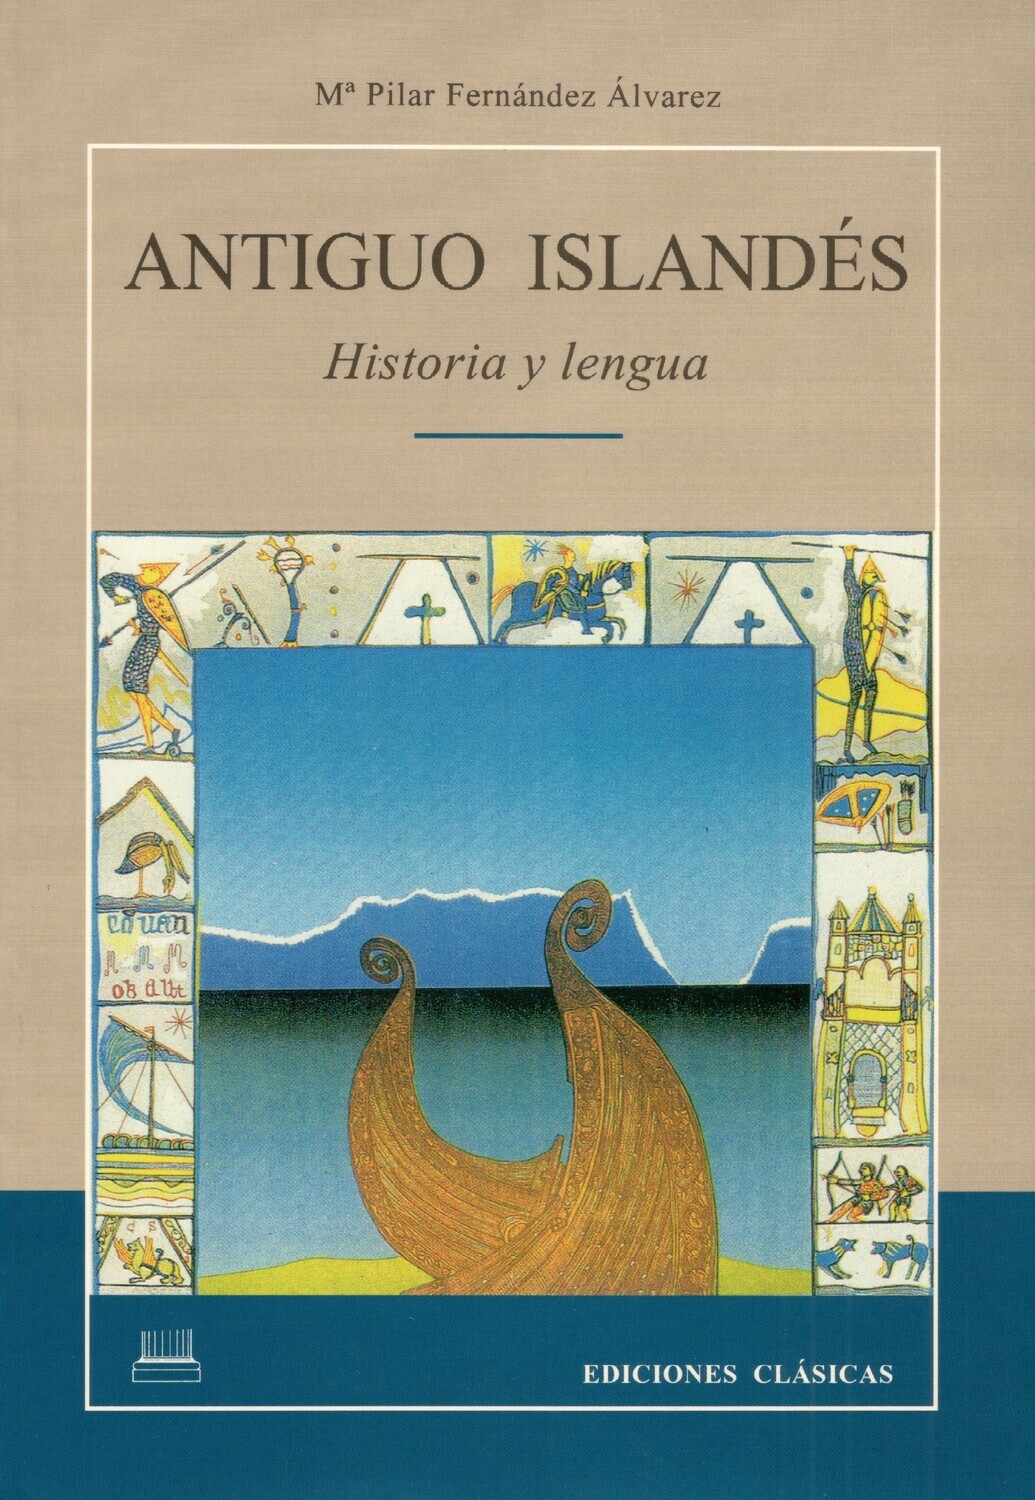 ANTIGUO ISLANDÉS, HISTORIA Y LENGUA